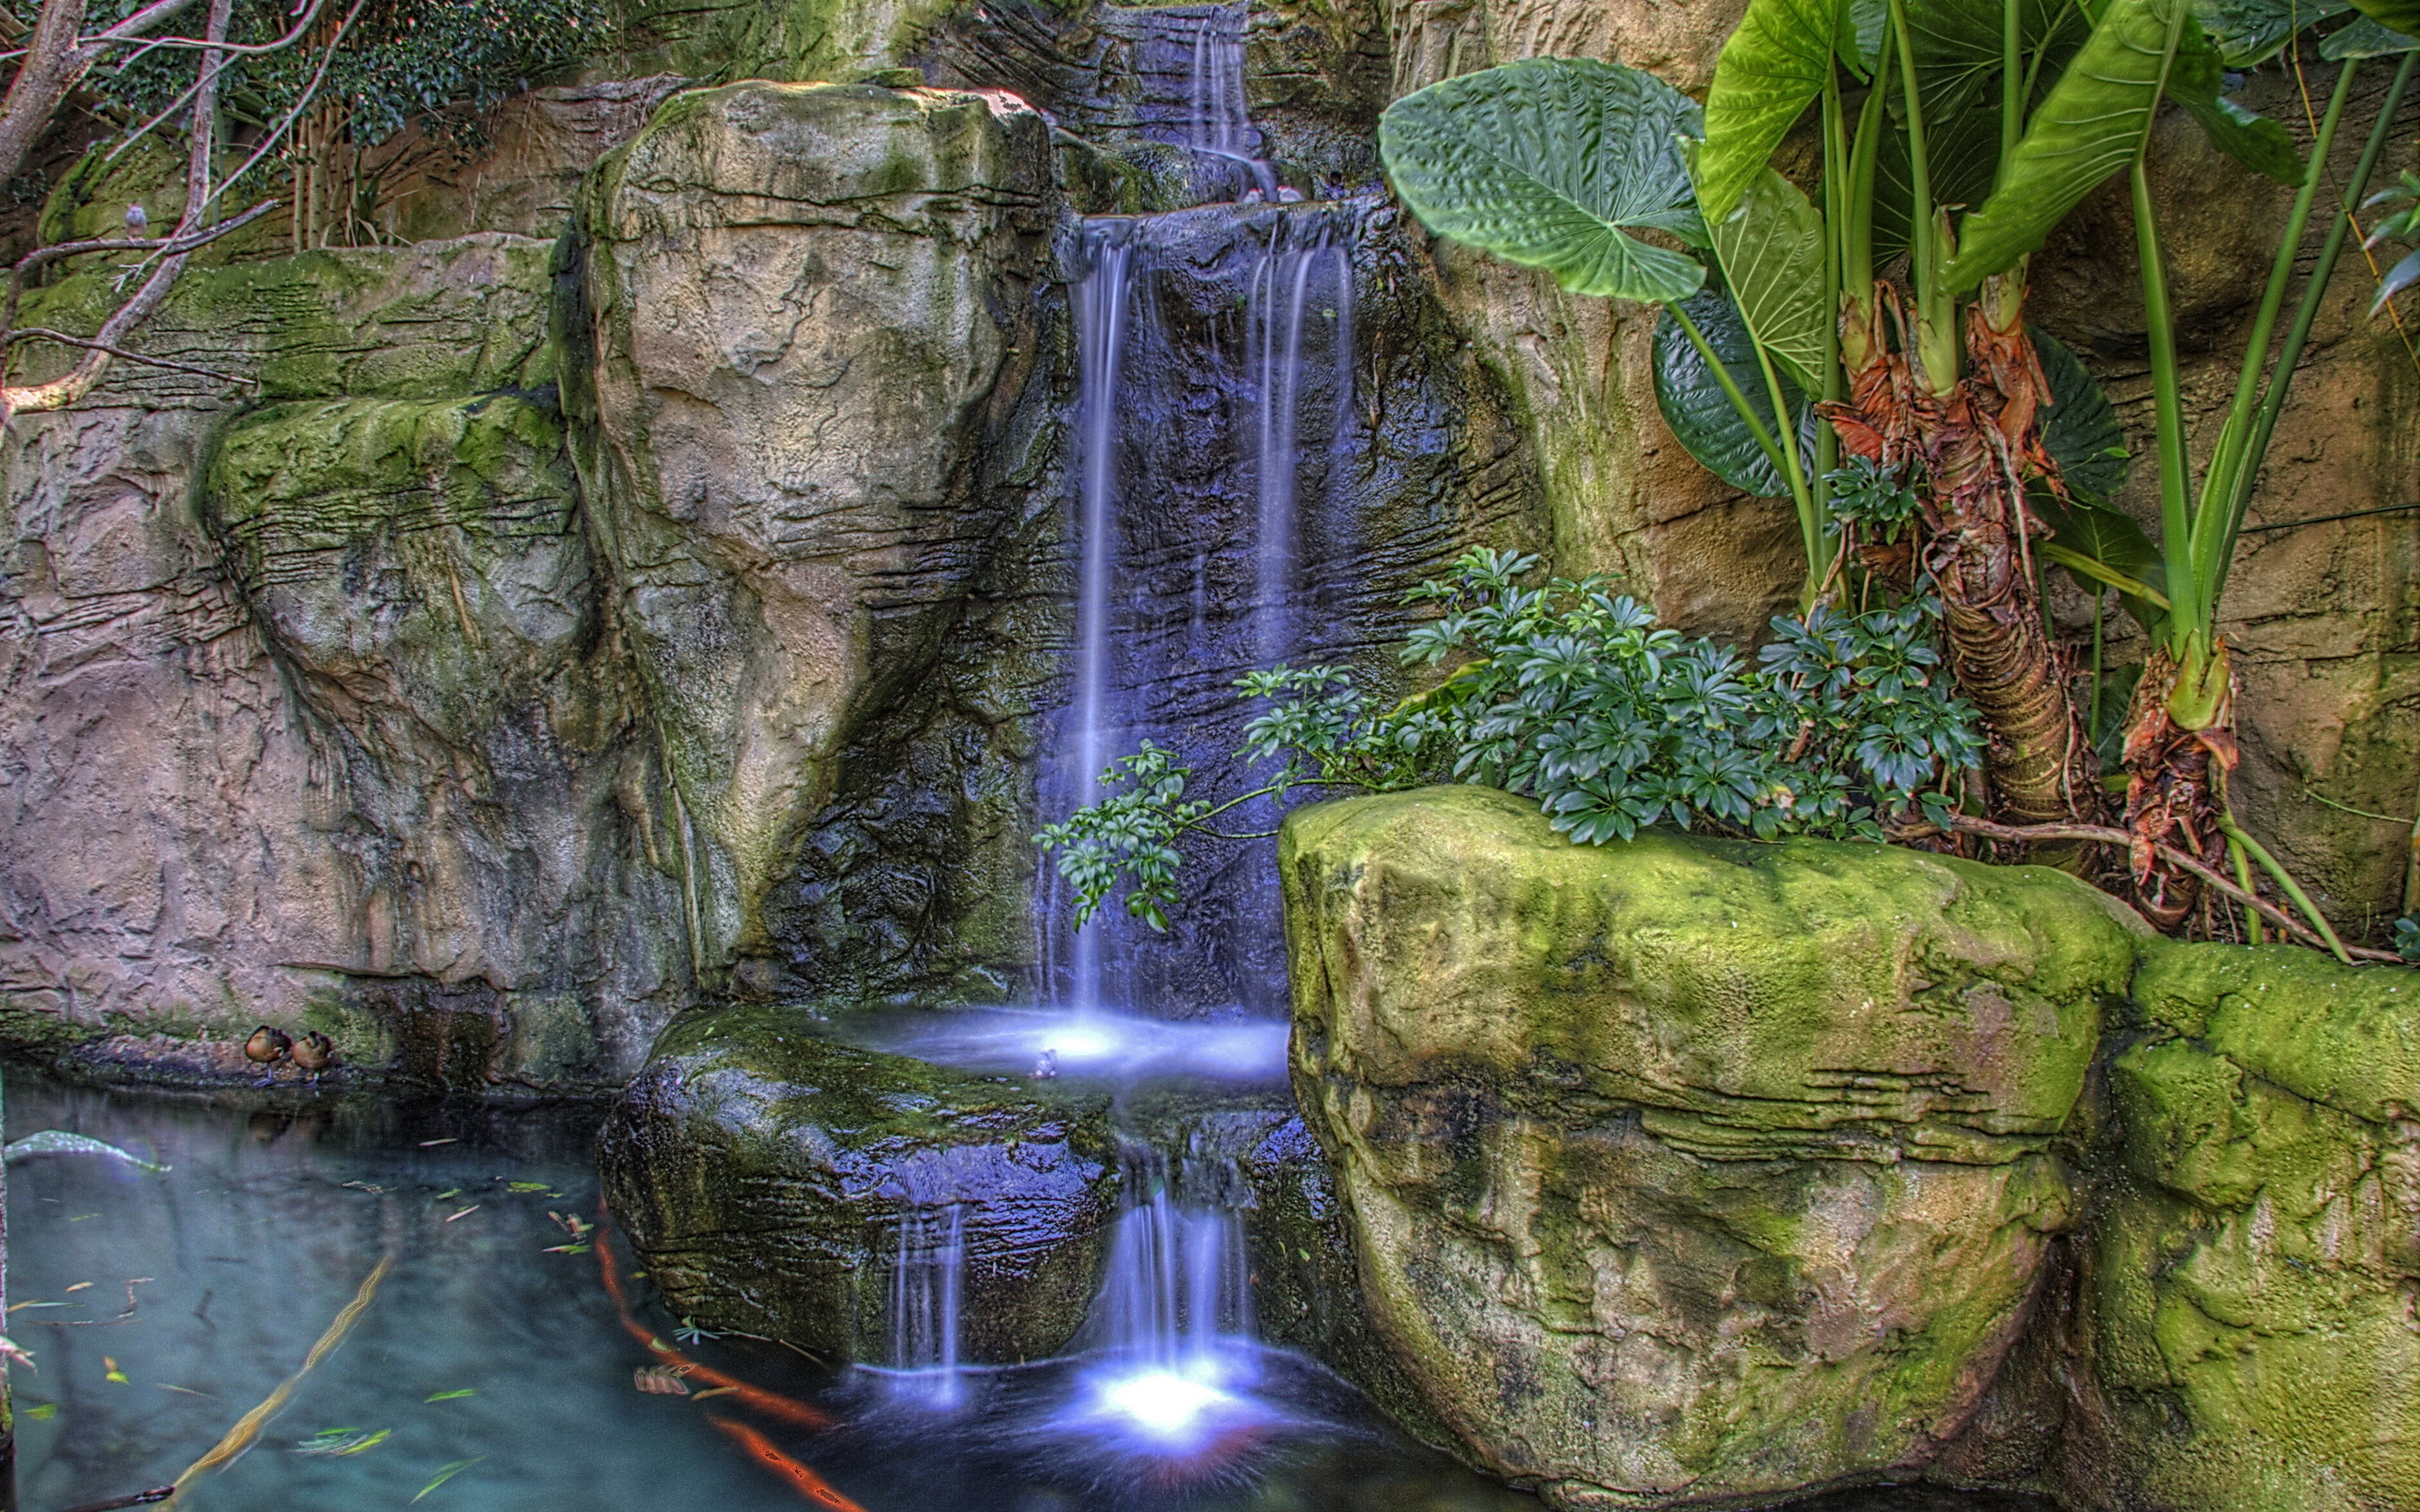 تصویر شگفت انگیز از آبشار تخیلی و طبیعت منحصر به فرد